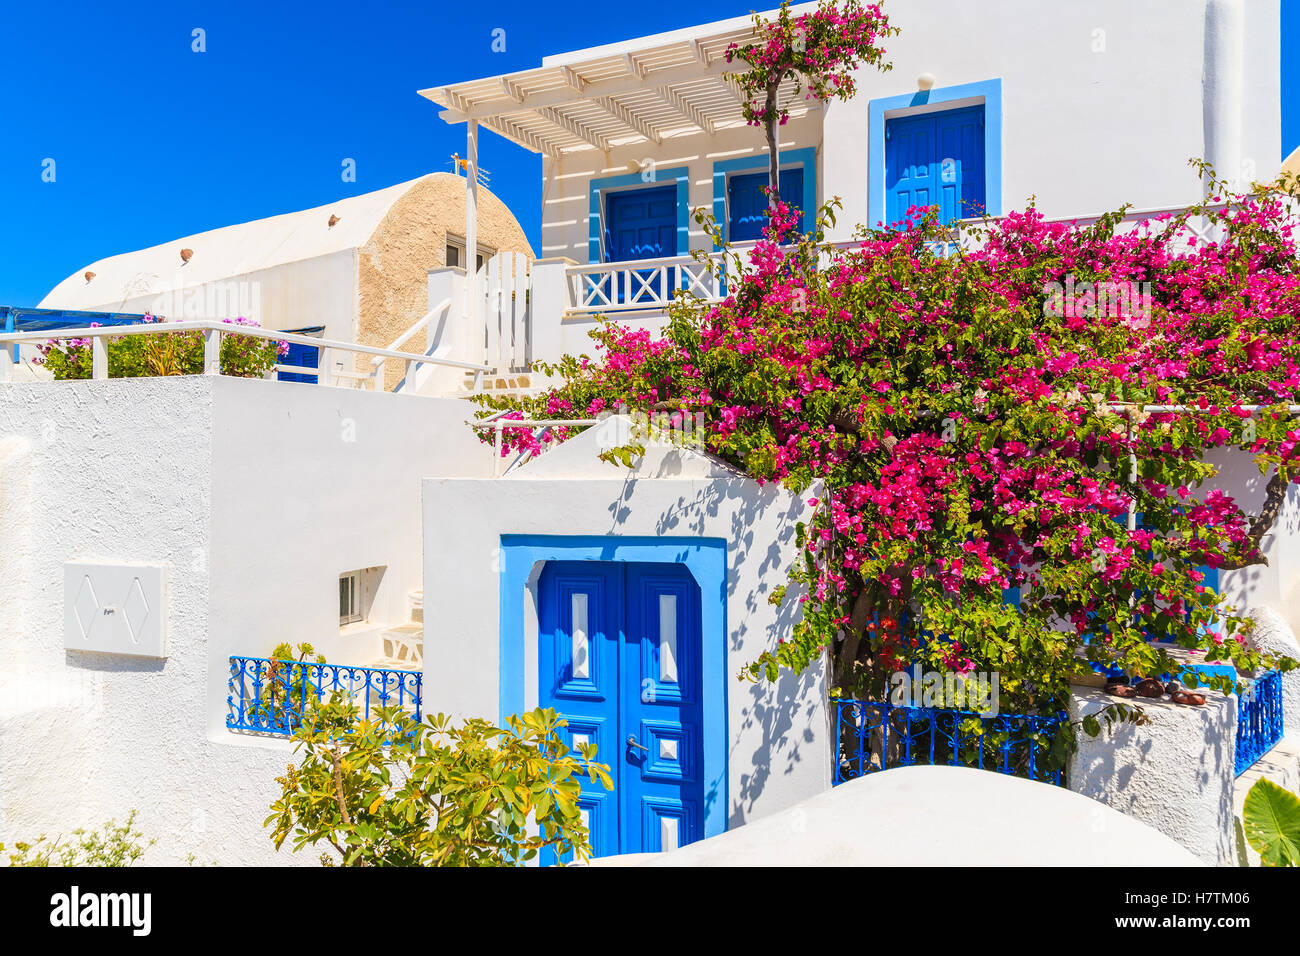 Blanc et bleu typique maison grecque décorée de fleurs rouges à Oia village sur l'île de Santorin, Grèce Banque D'Images